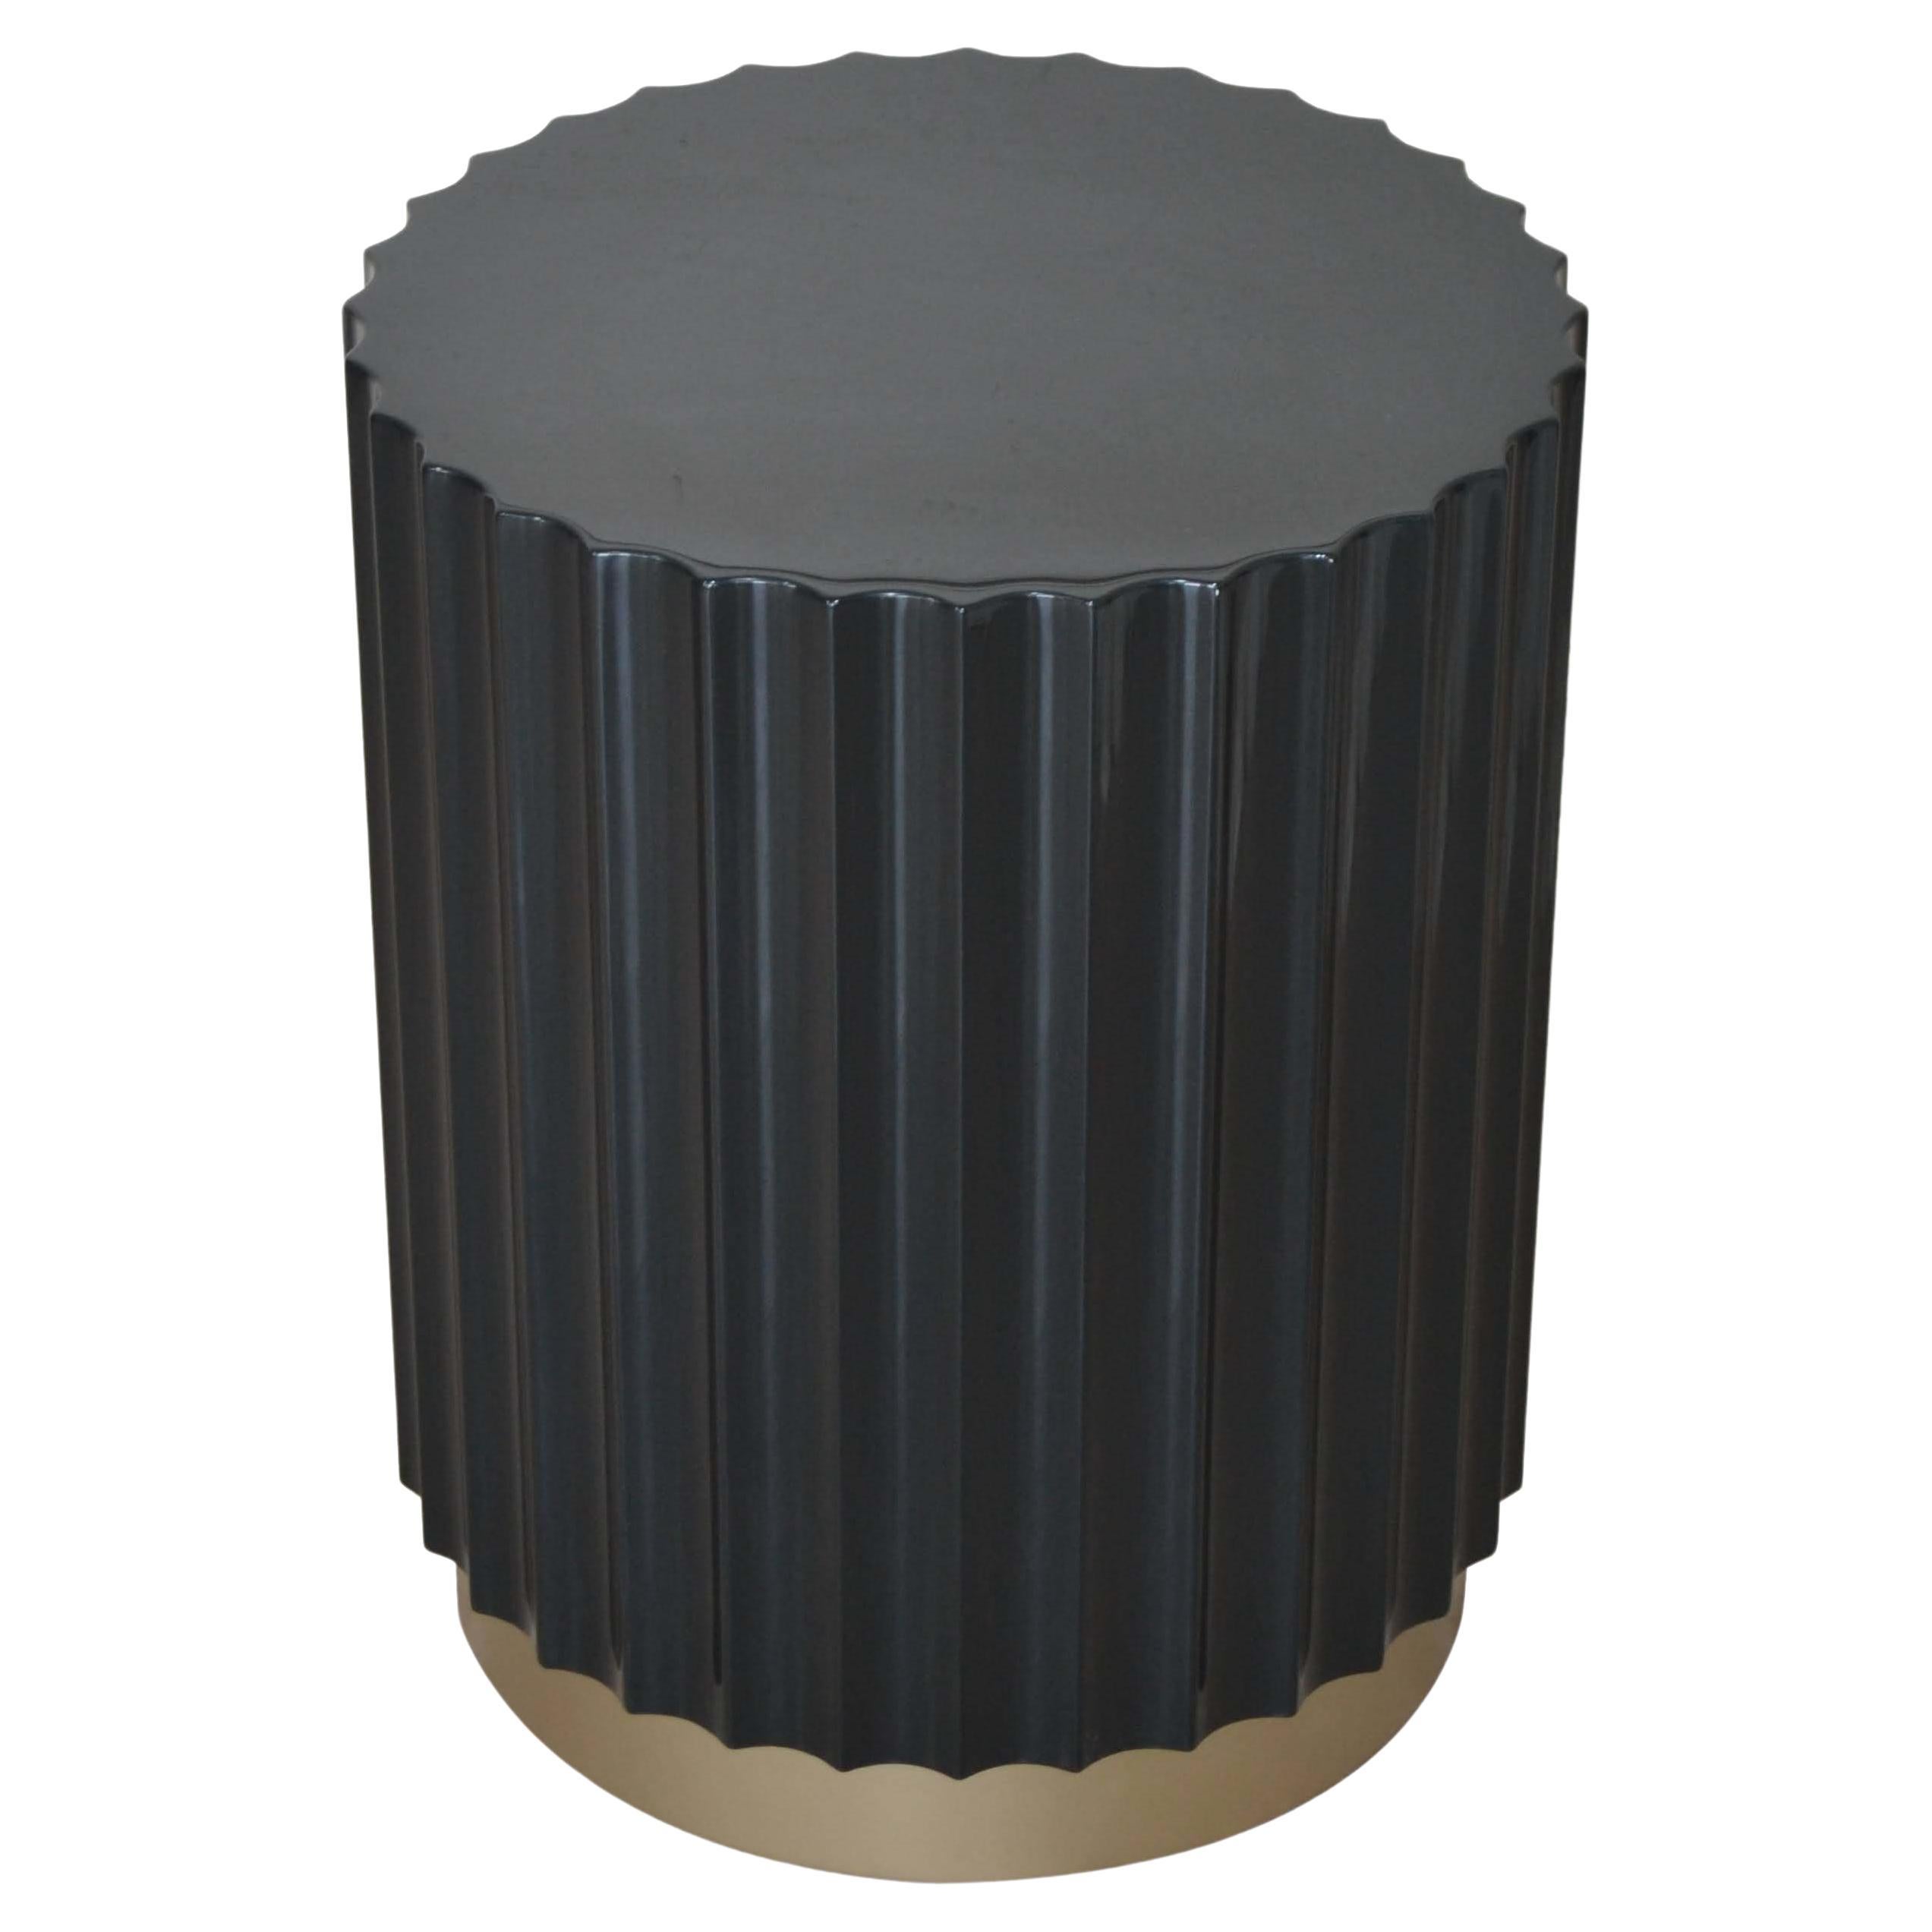 Table basse / tambour ronde avec base peinte en laiton, couleur smaradienne foncée